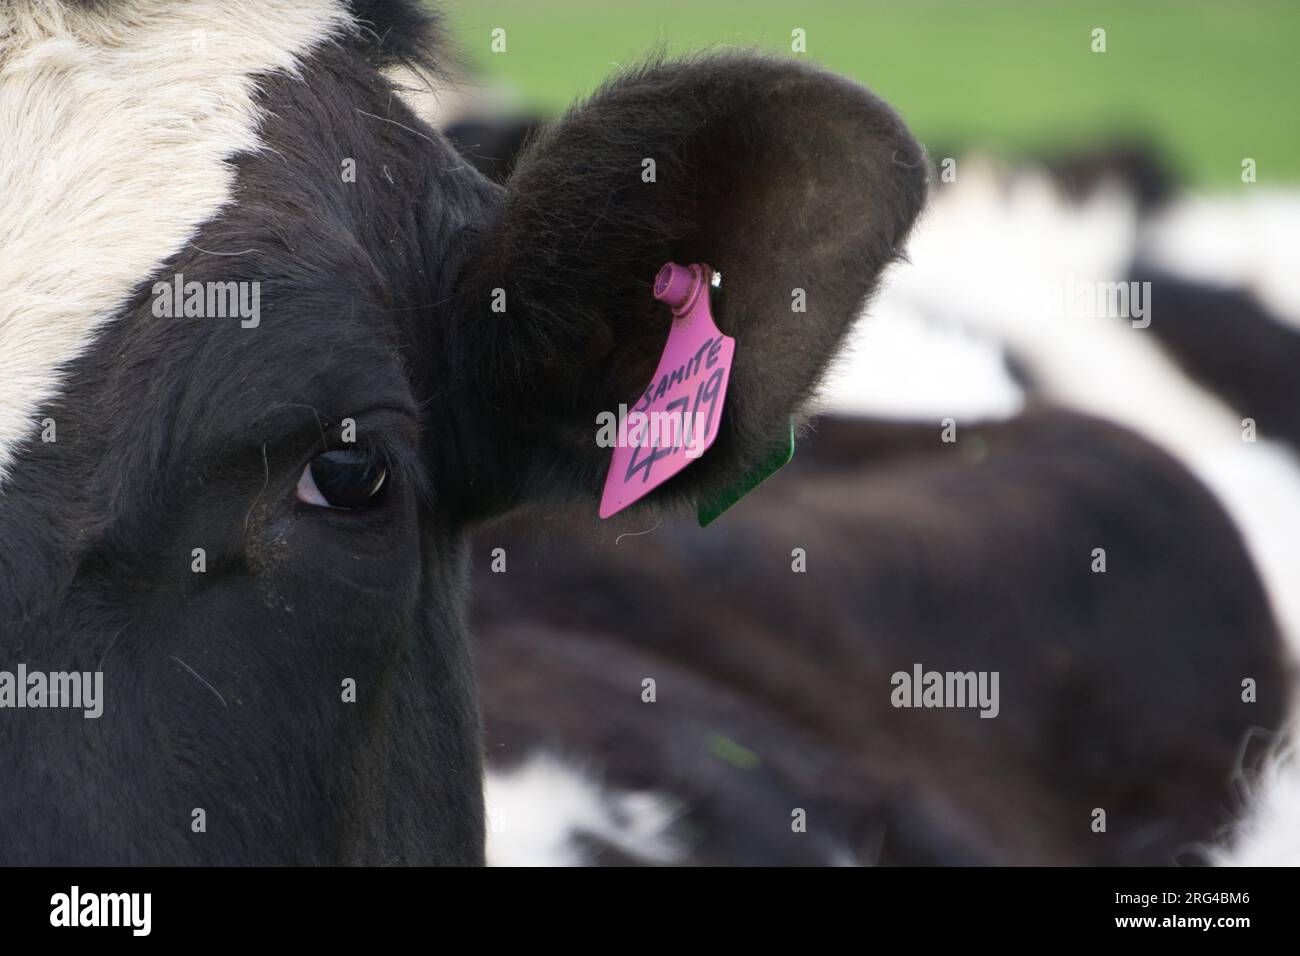 Primo piano delle etichette per l'identificazione del bestiame viola Dewlap applicate all'orecchio della vacca da latte Holstein Friesian Foto Stock